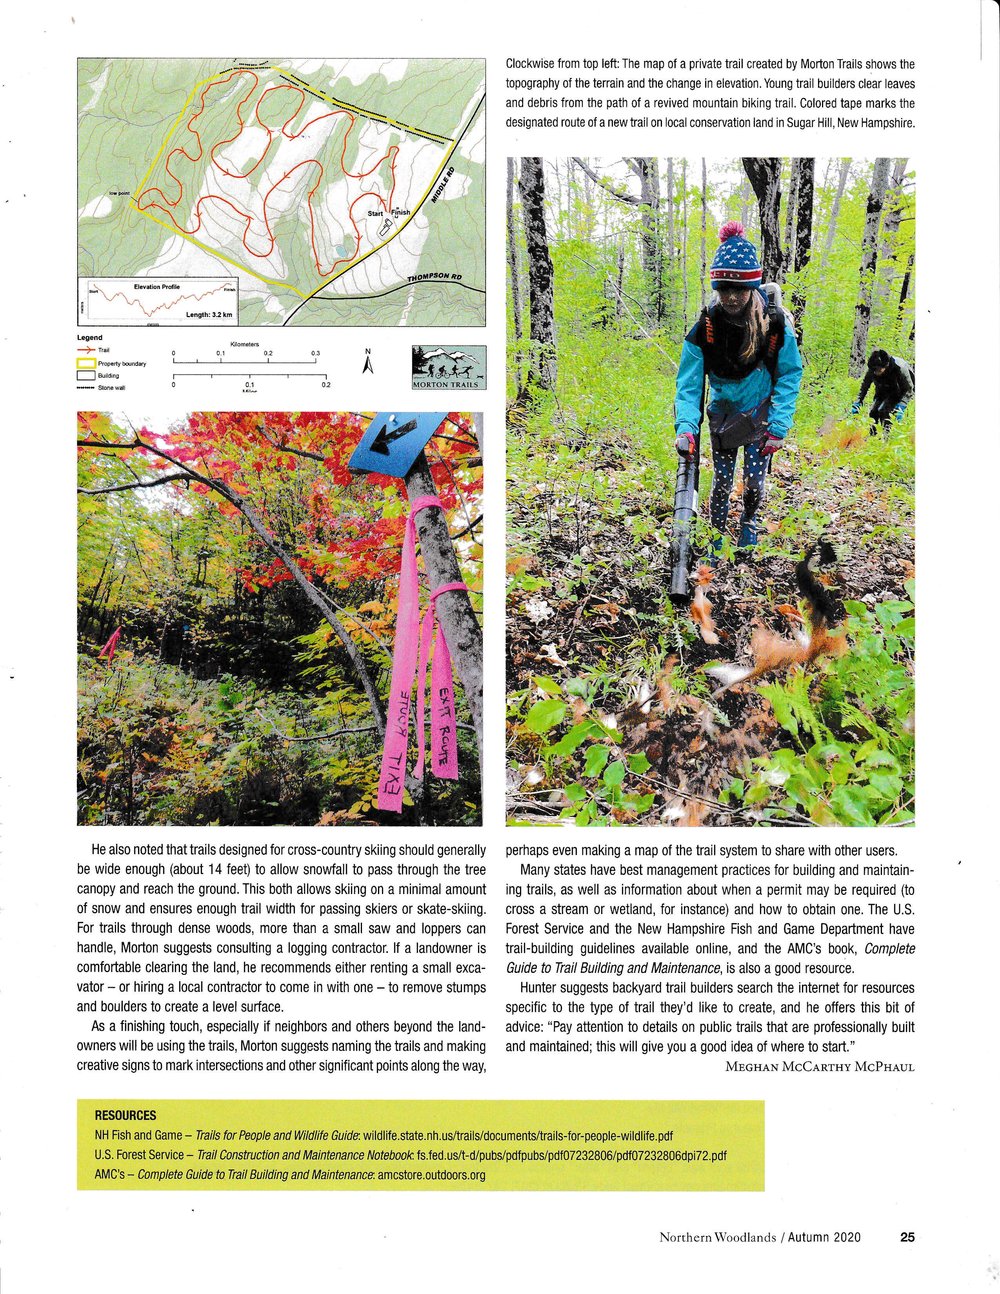 Northern Woodlands Autumn 2020_Page_3.jpg